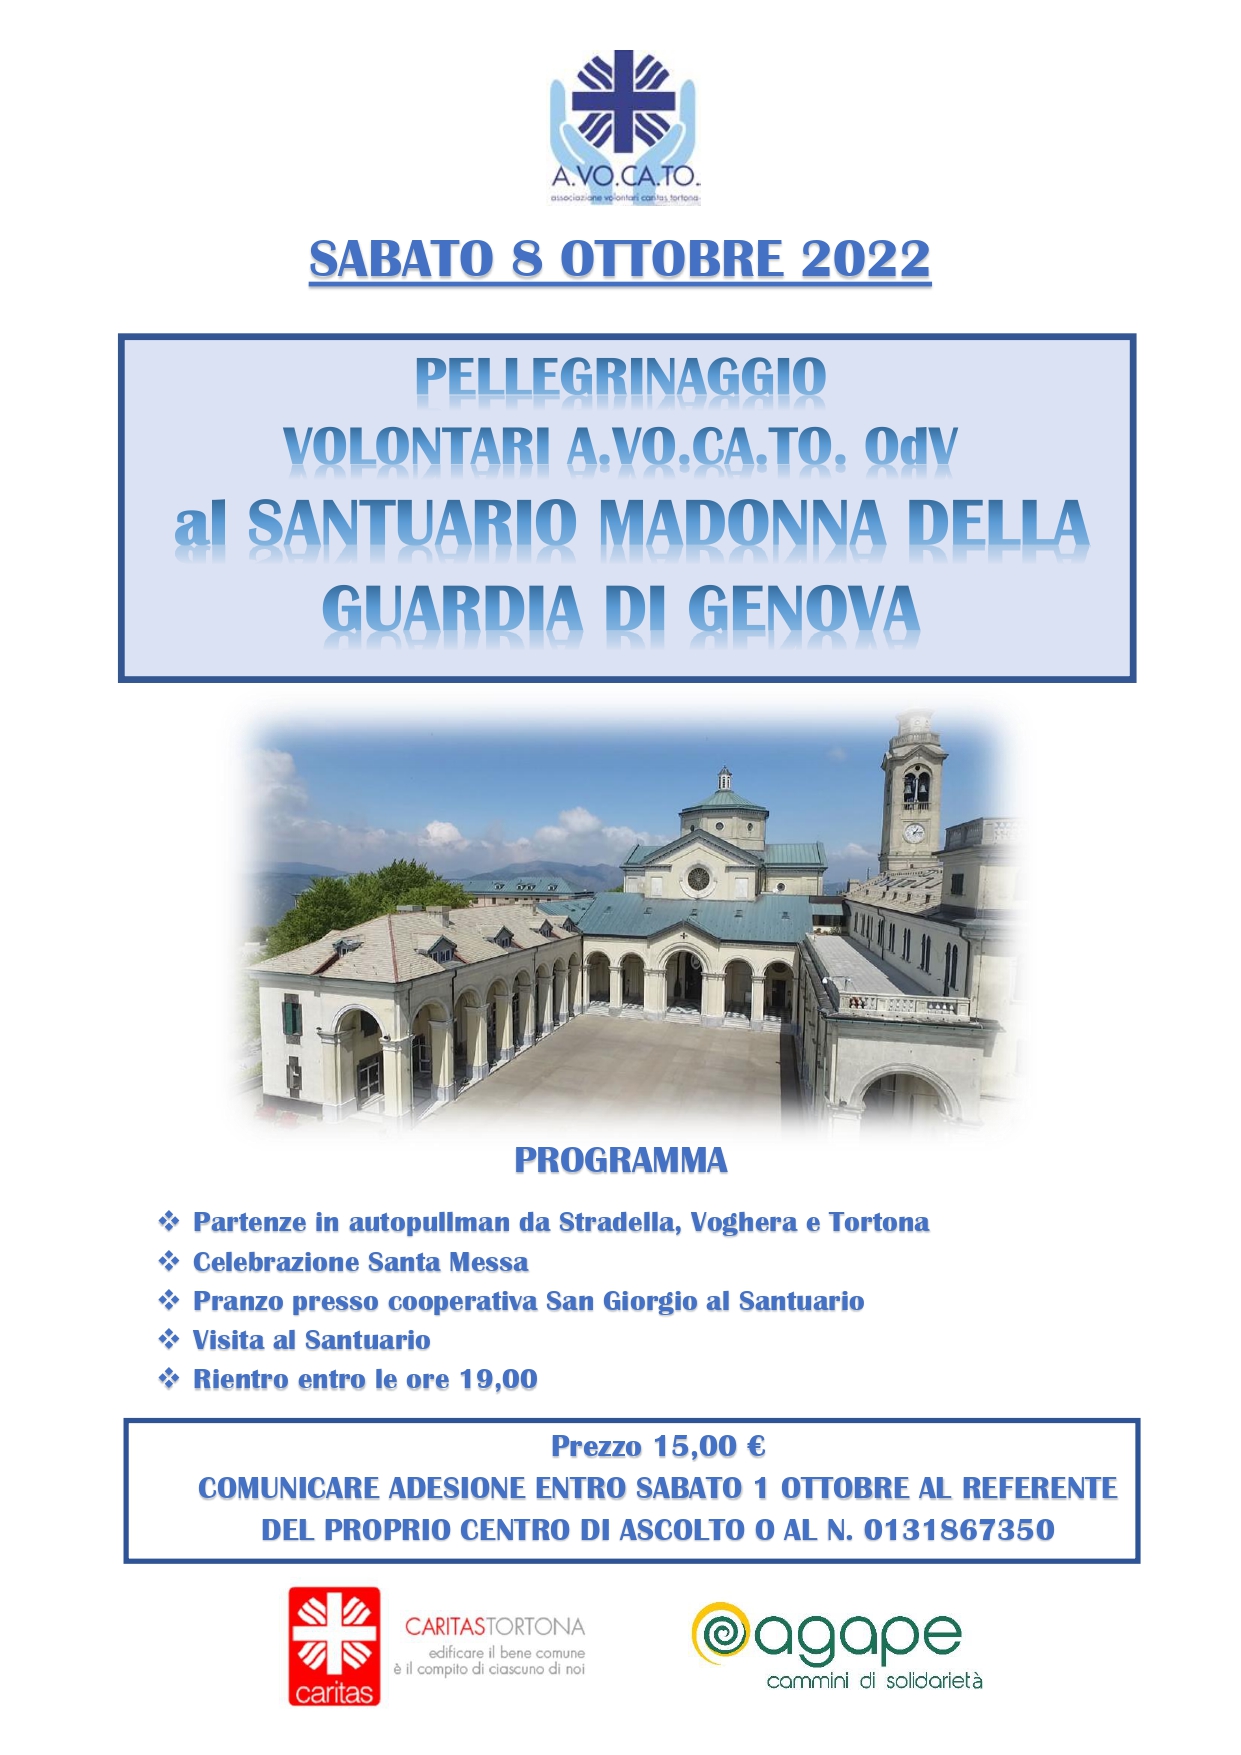 Pellegrinaggio volontari A.VO.CA.TO Odv presso il Santuario della Madonna della Guardia di Genova